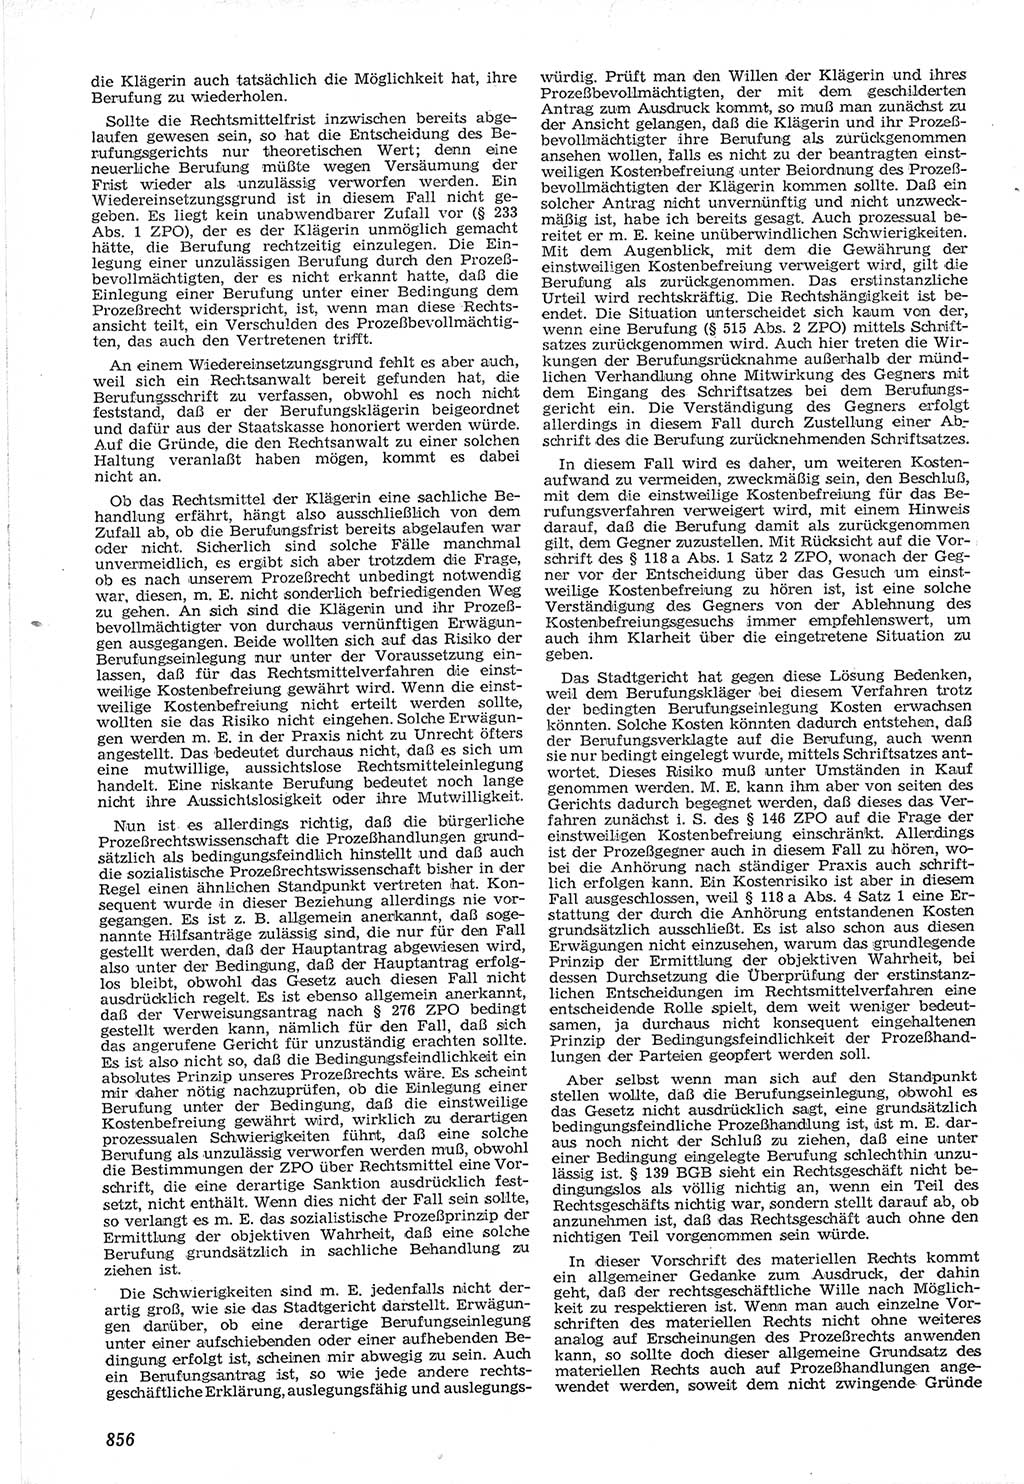 Neue Justiz (NJ), Zeitschrift für Recht und Rechtswissenschaft [Deutsche Demokratische Republik (DDR)], 12. Jahrgang 1958, Seite 856 (NJ DDR 1958, S. 856)